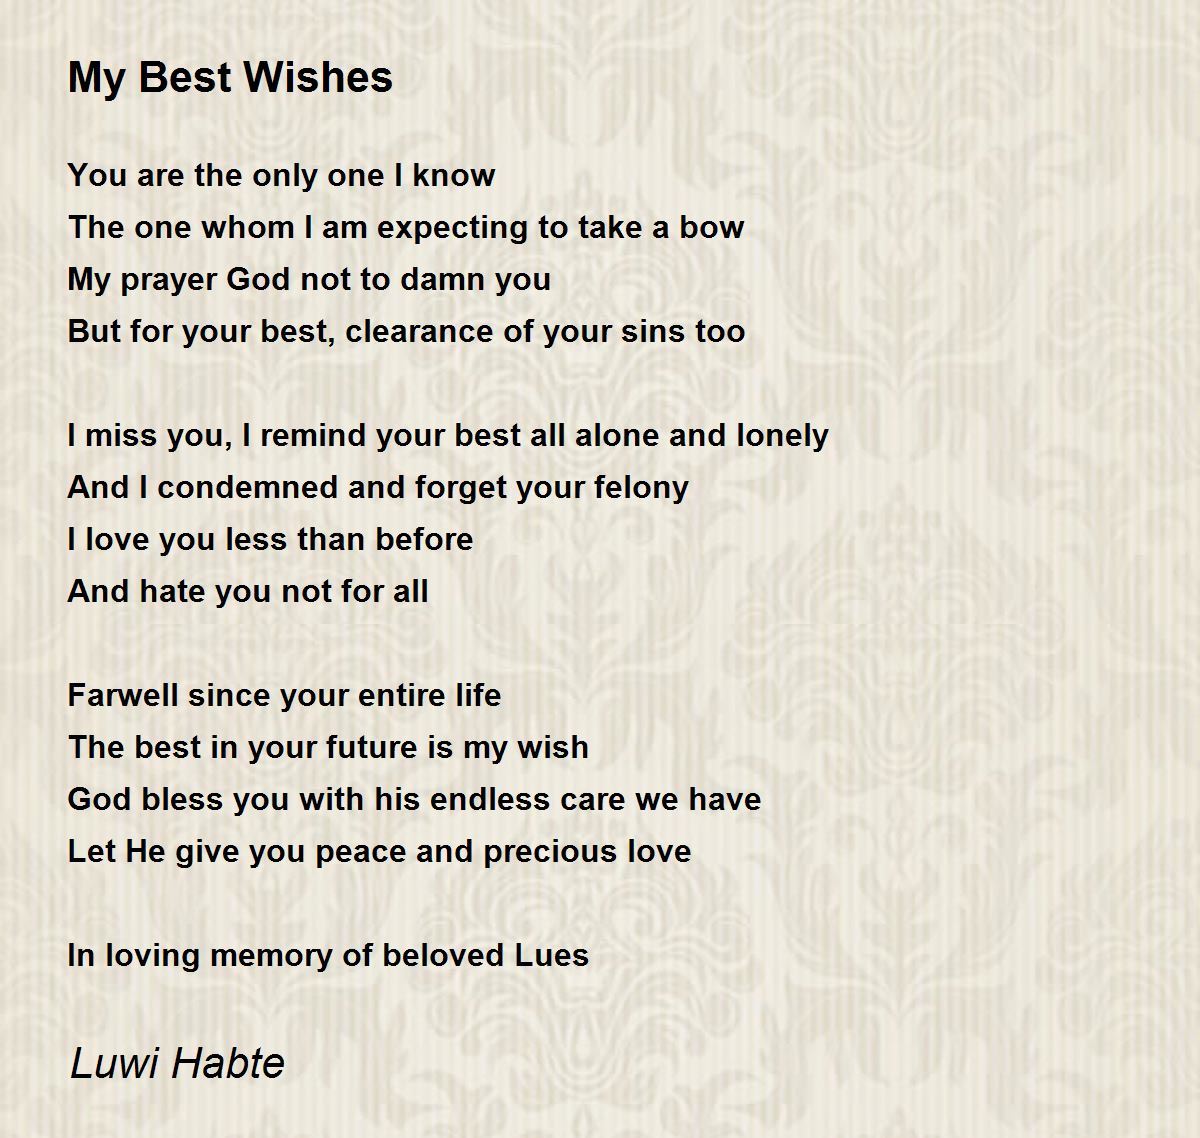 My Best Wishes - My Best Wishes Poem by Luwi Habte